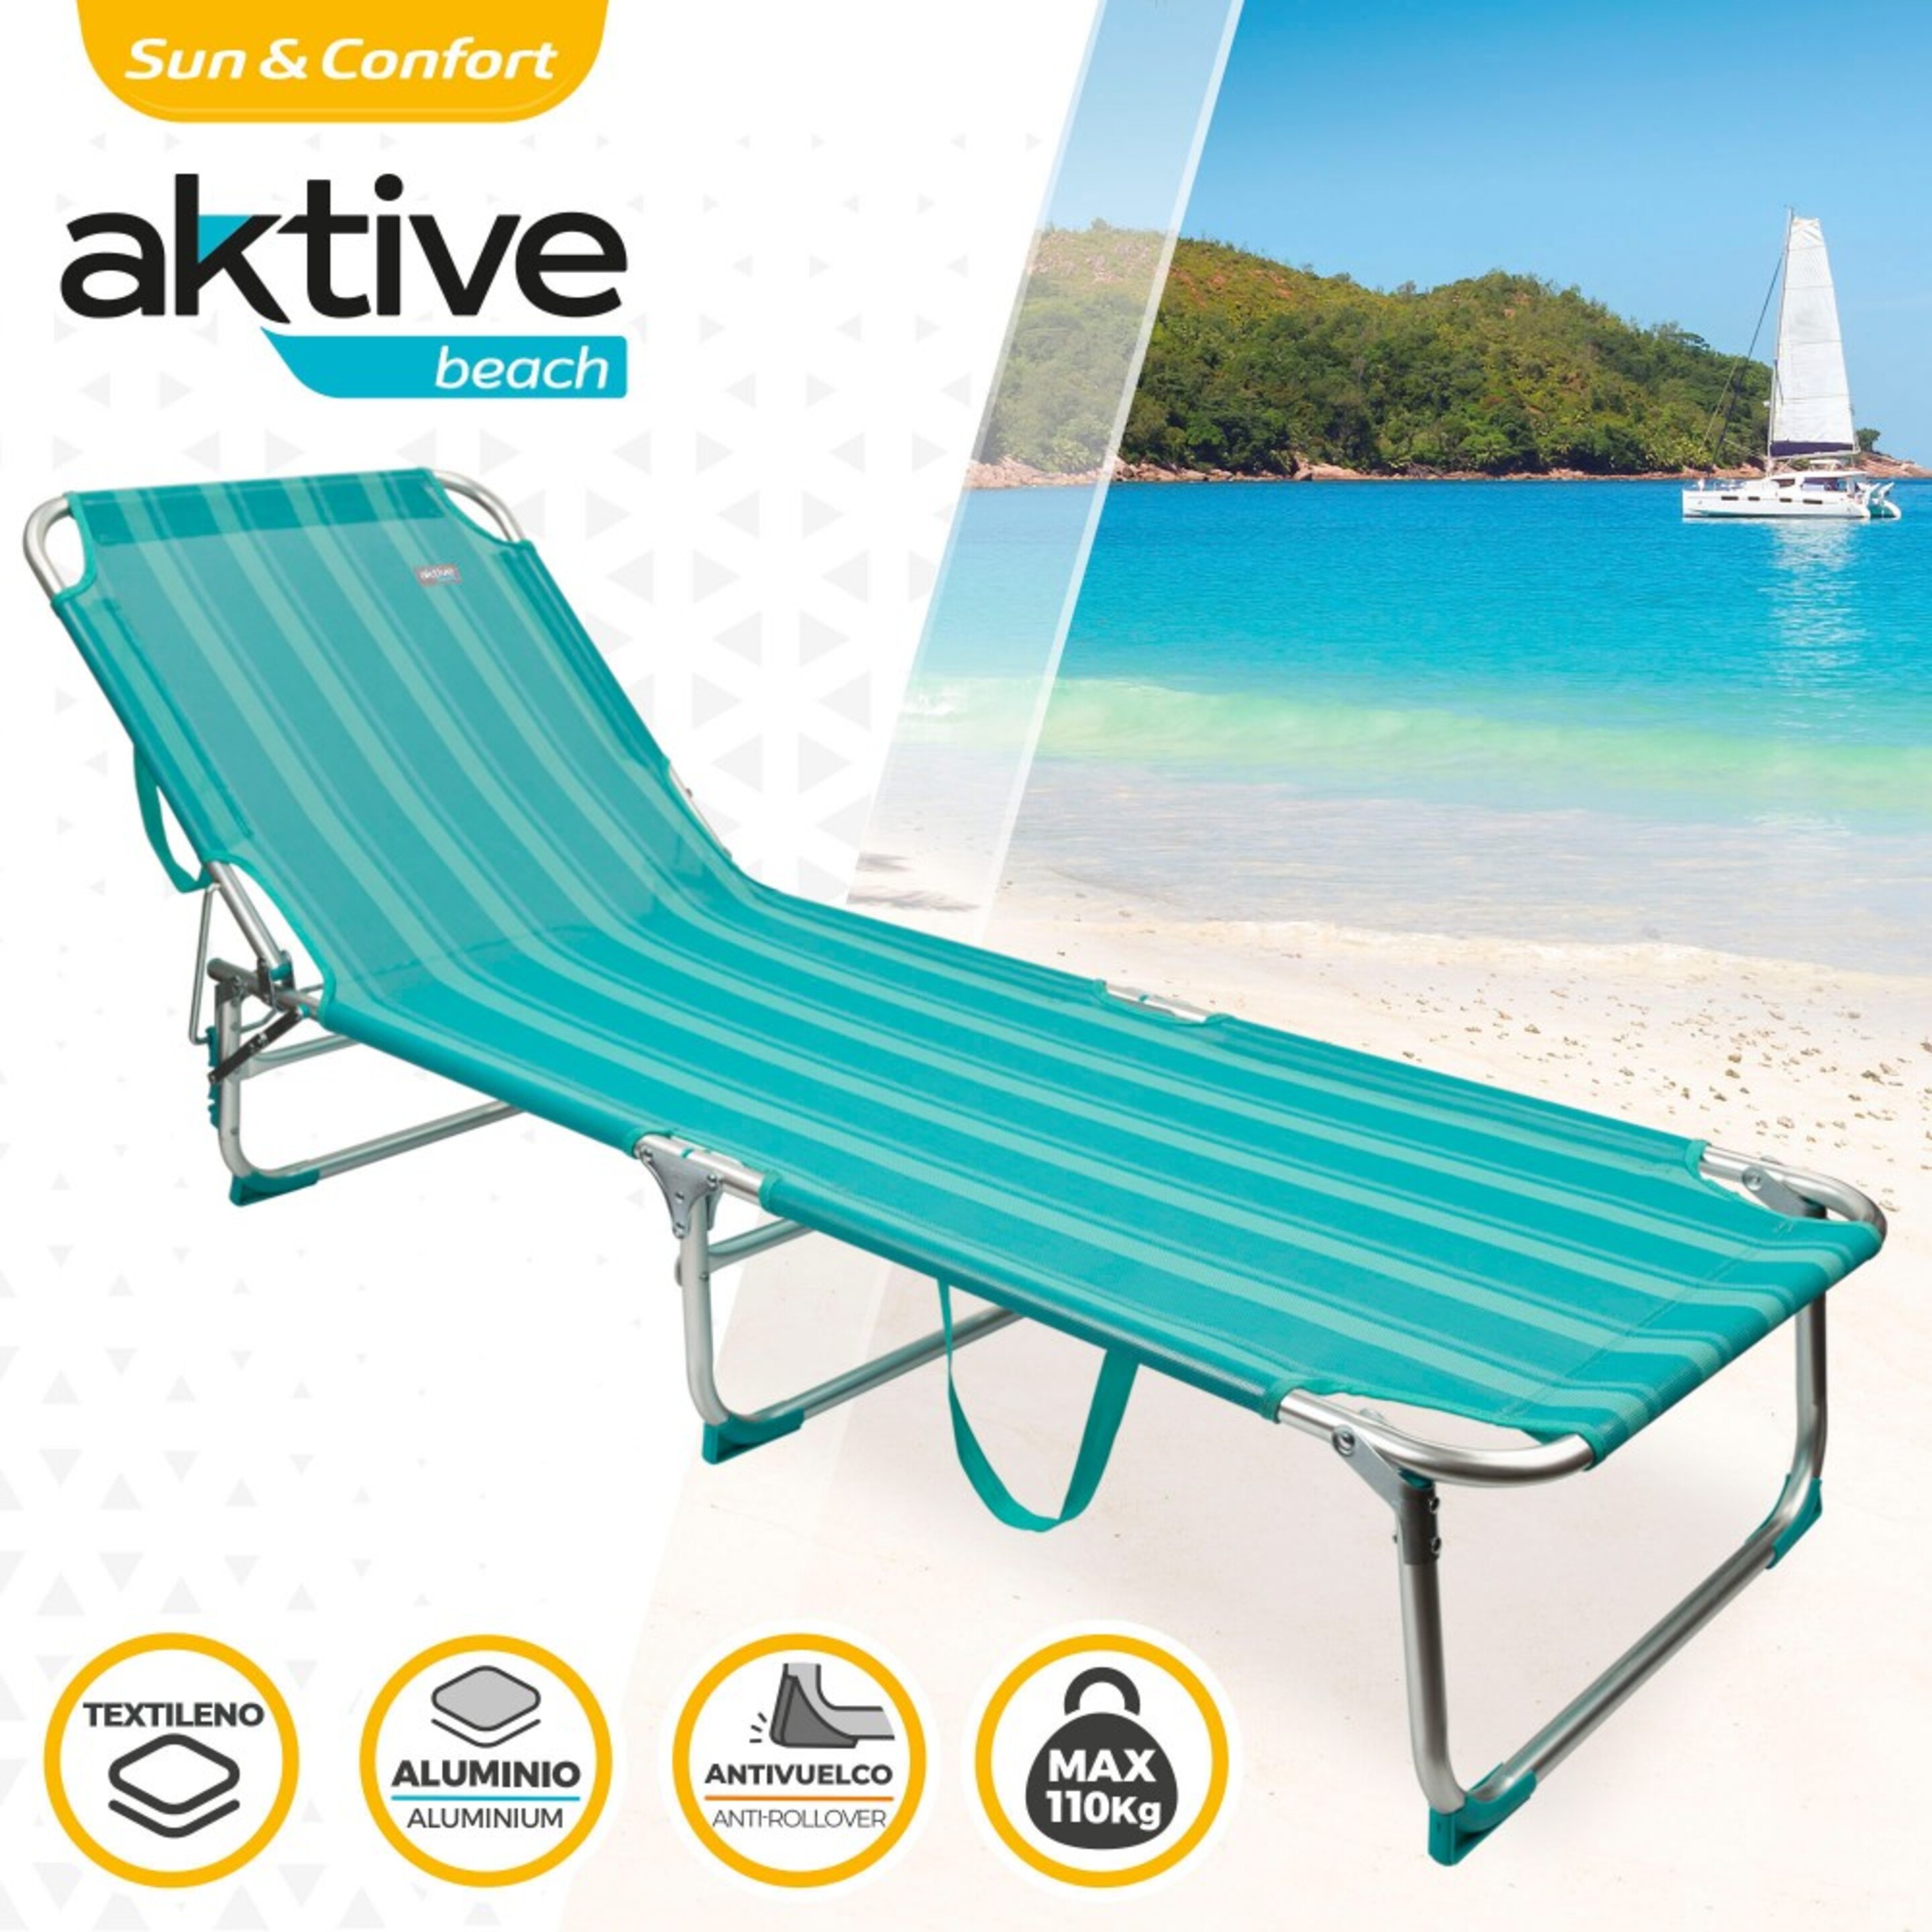 Tumbona Plegable De Aluminio 3 Posiciones Aktive Beach - Azul - Tumbona De Playa Aktive  MKP